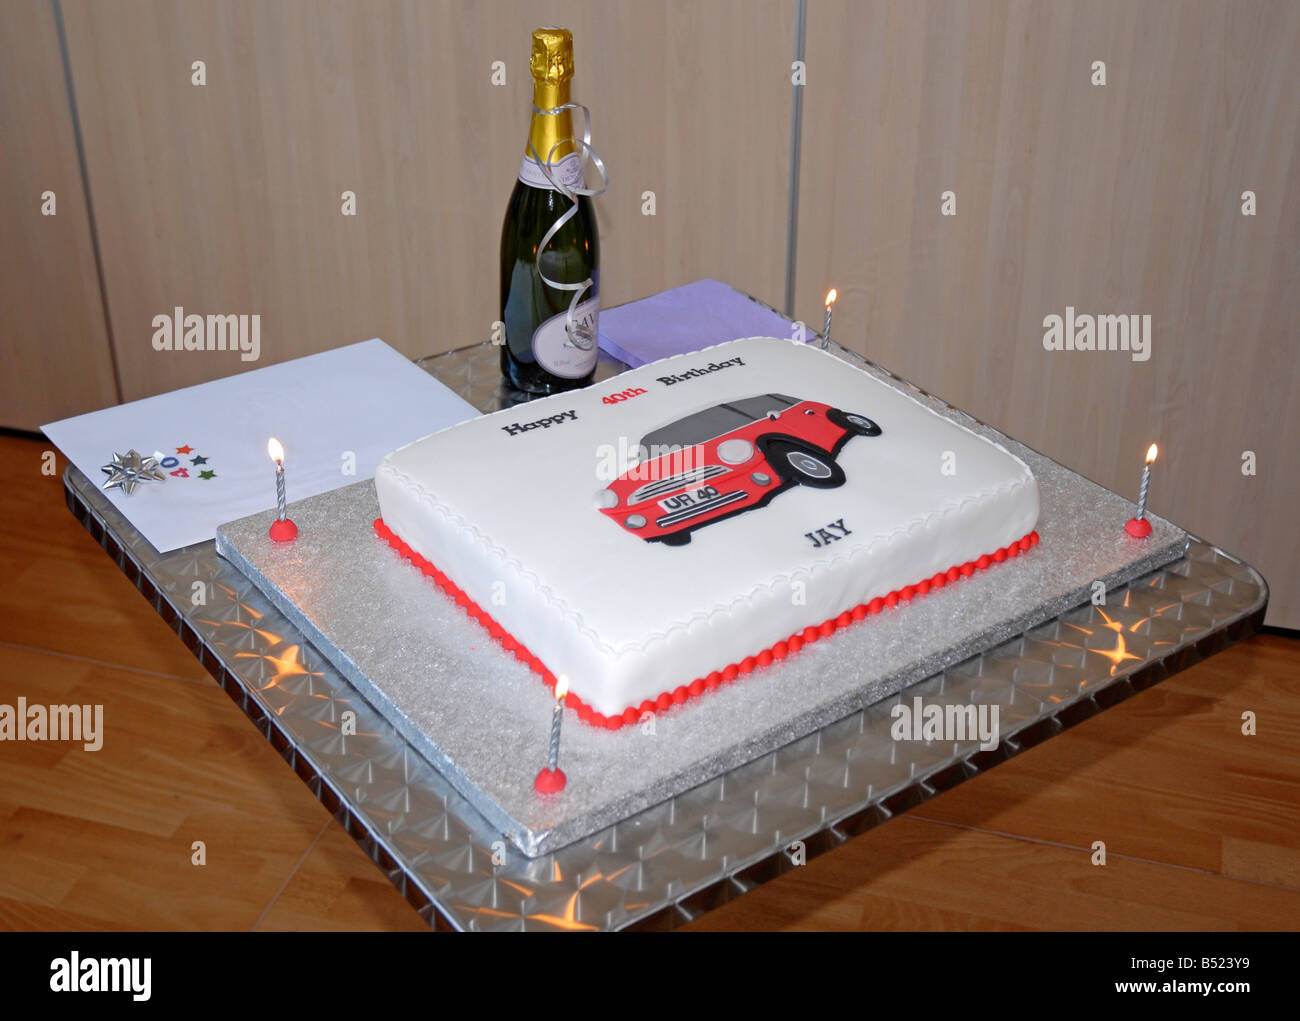 Square 40e anniversaire gâteau décoré avec l'image du mini-Cooper, avec quatre cartes et allumé des bougies et du champagne Banque D'Images